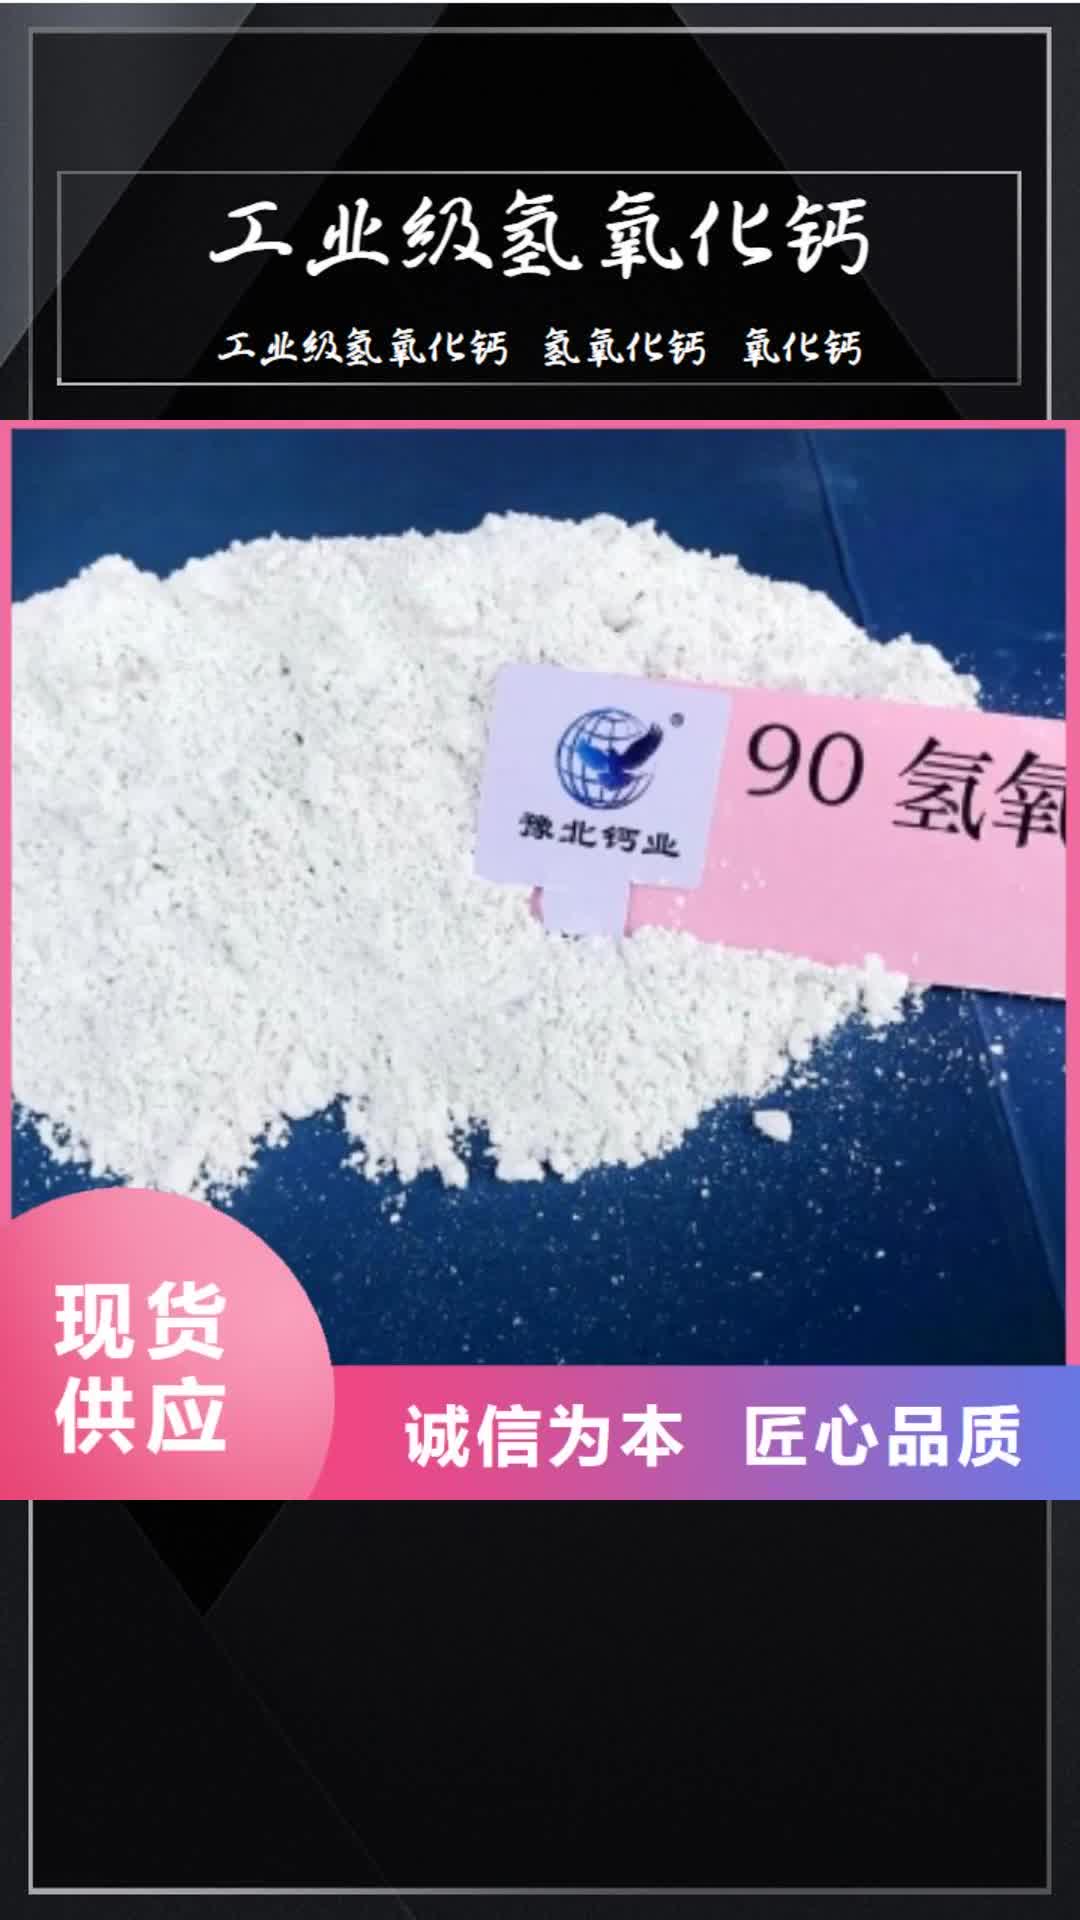 宁德【工业级氢氧化钙】,高效脱硫剂符合行业标准